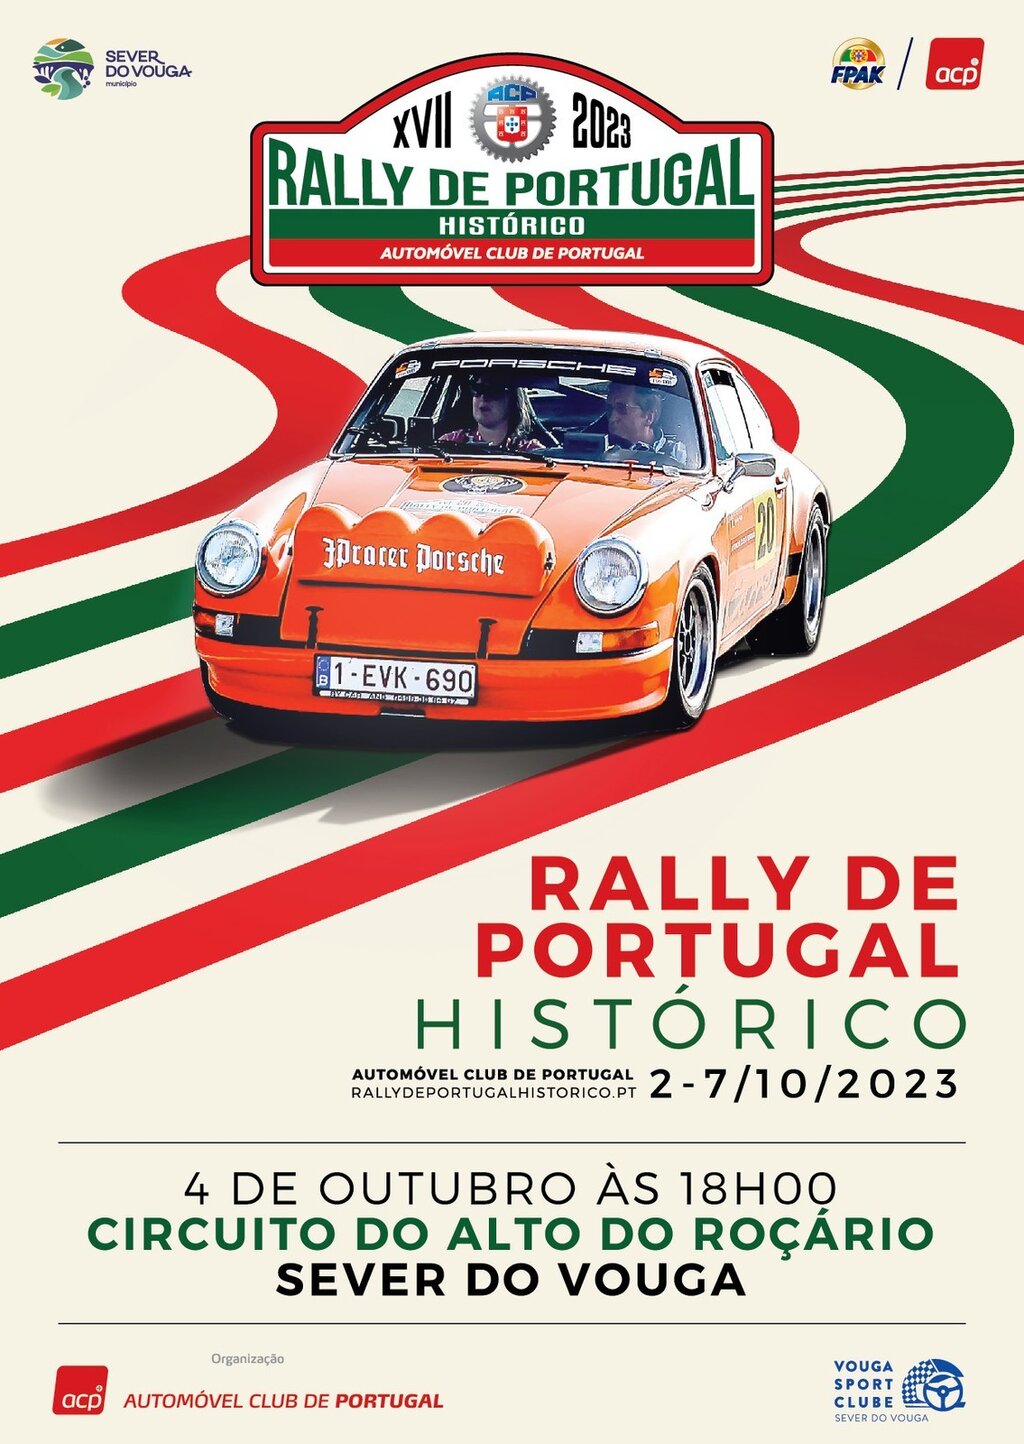 4 out - Rally de Portugal Histórico - Psta do Roçário